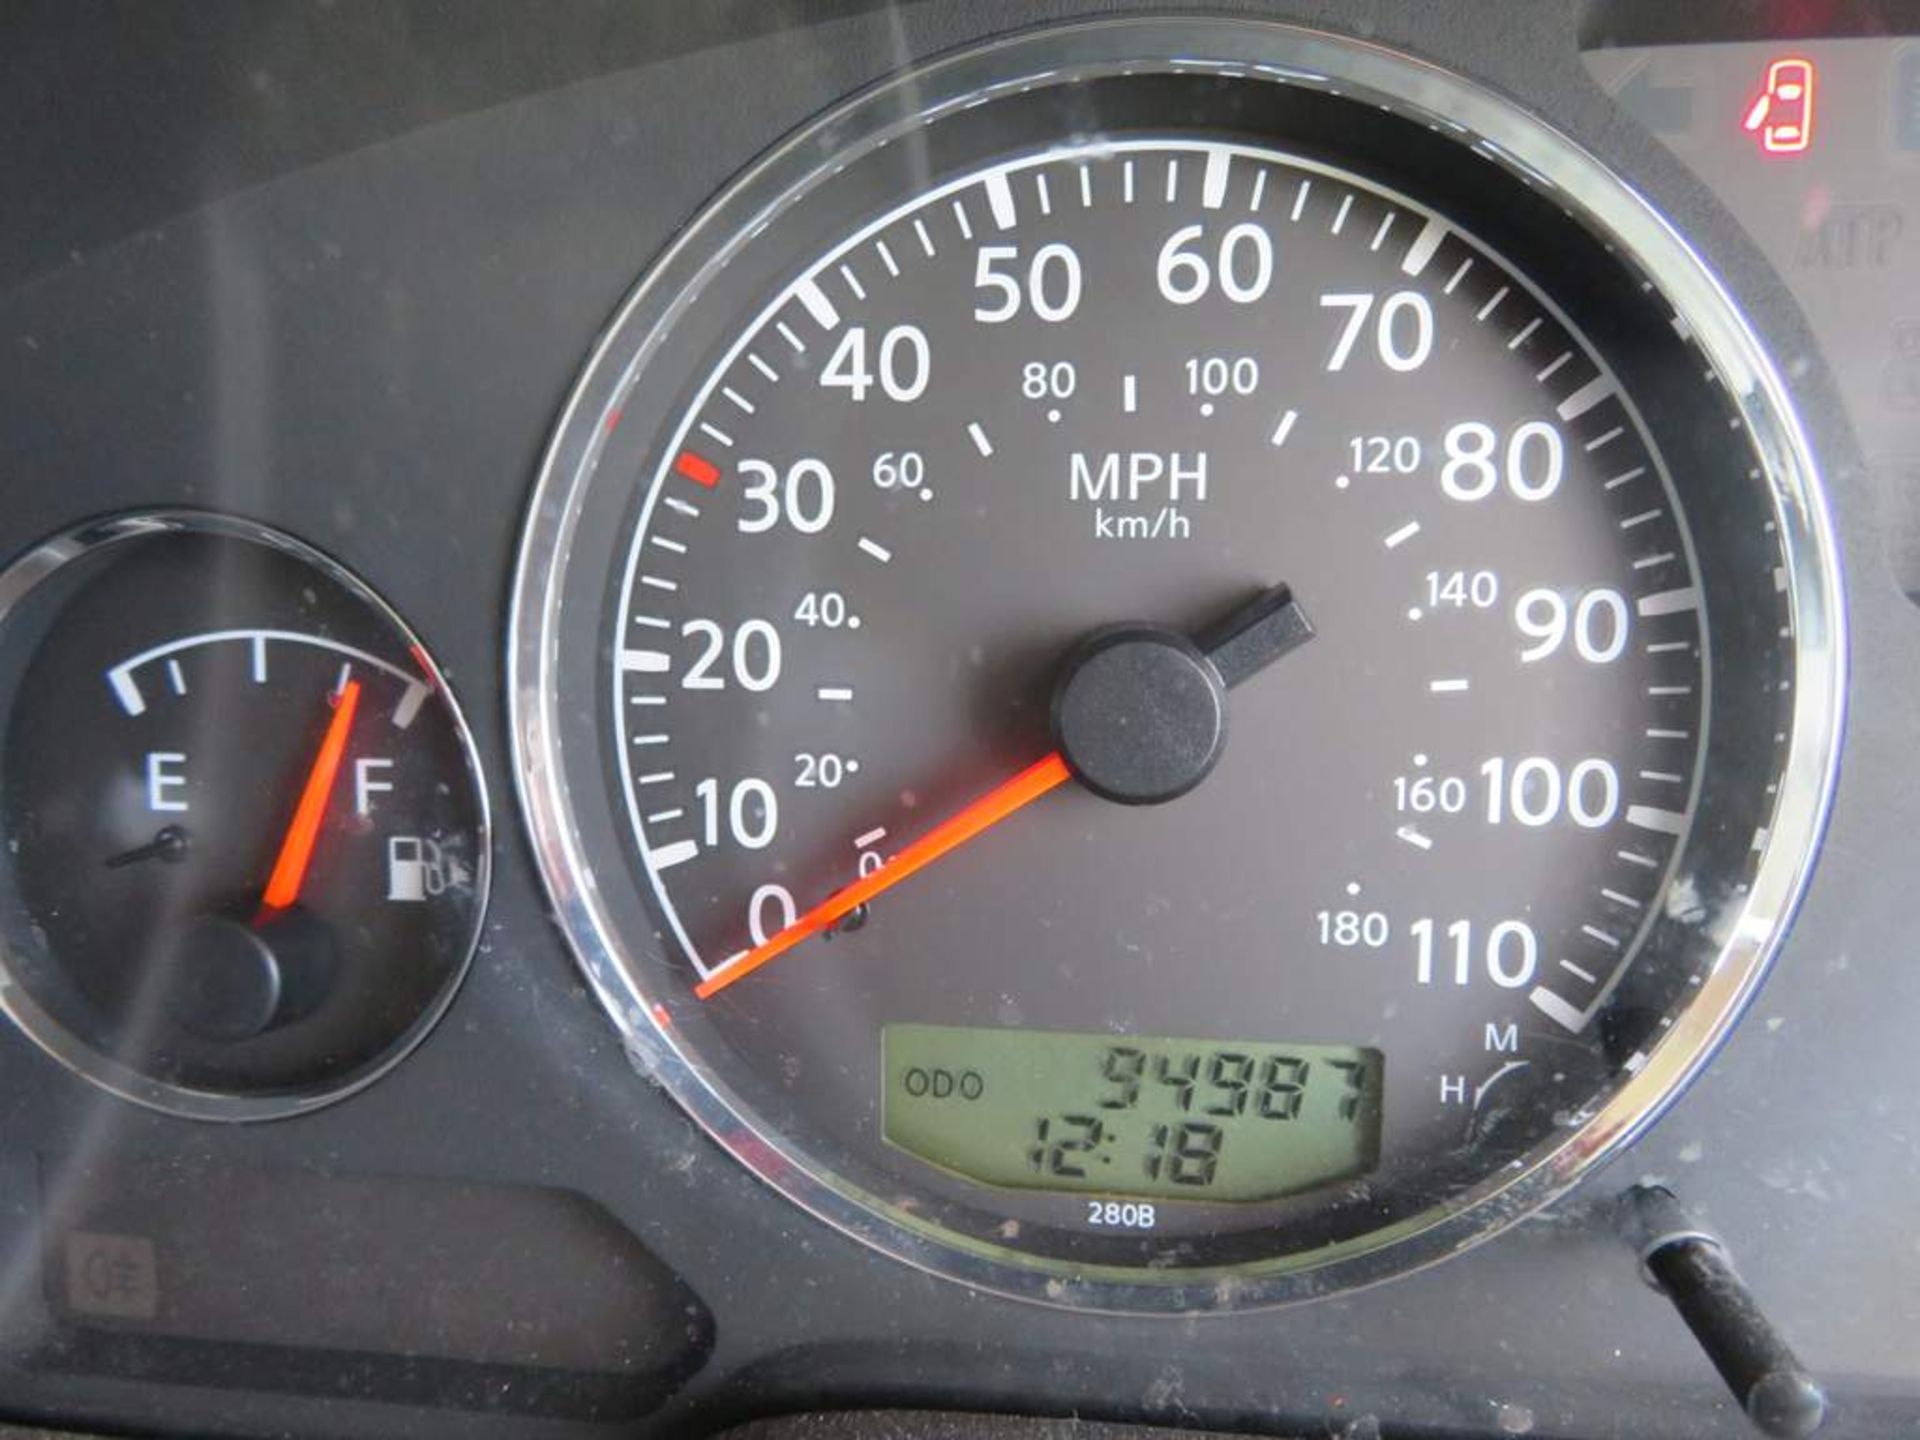 2009 Nissan Patrol Trek DI 4x4 - Image 11 of 30